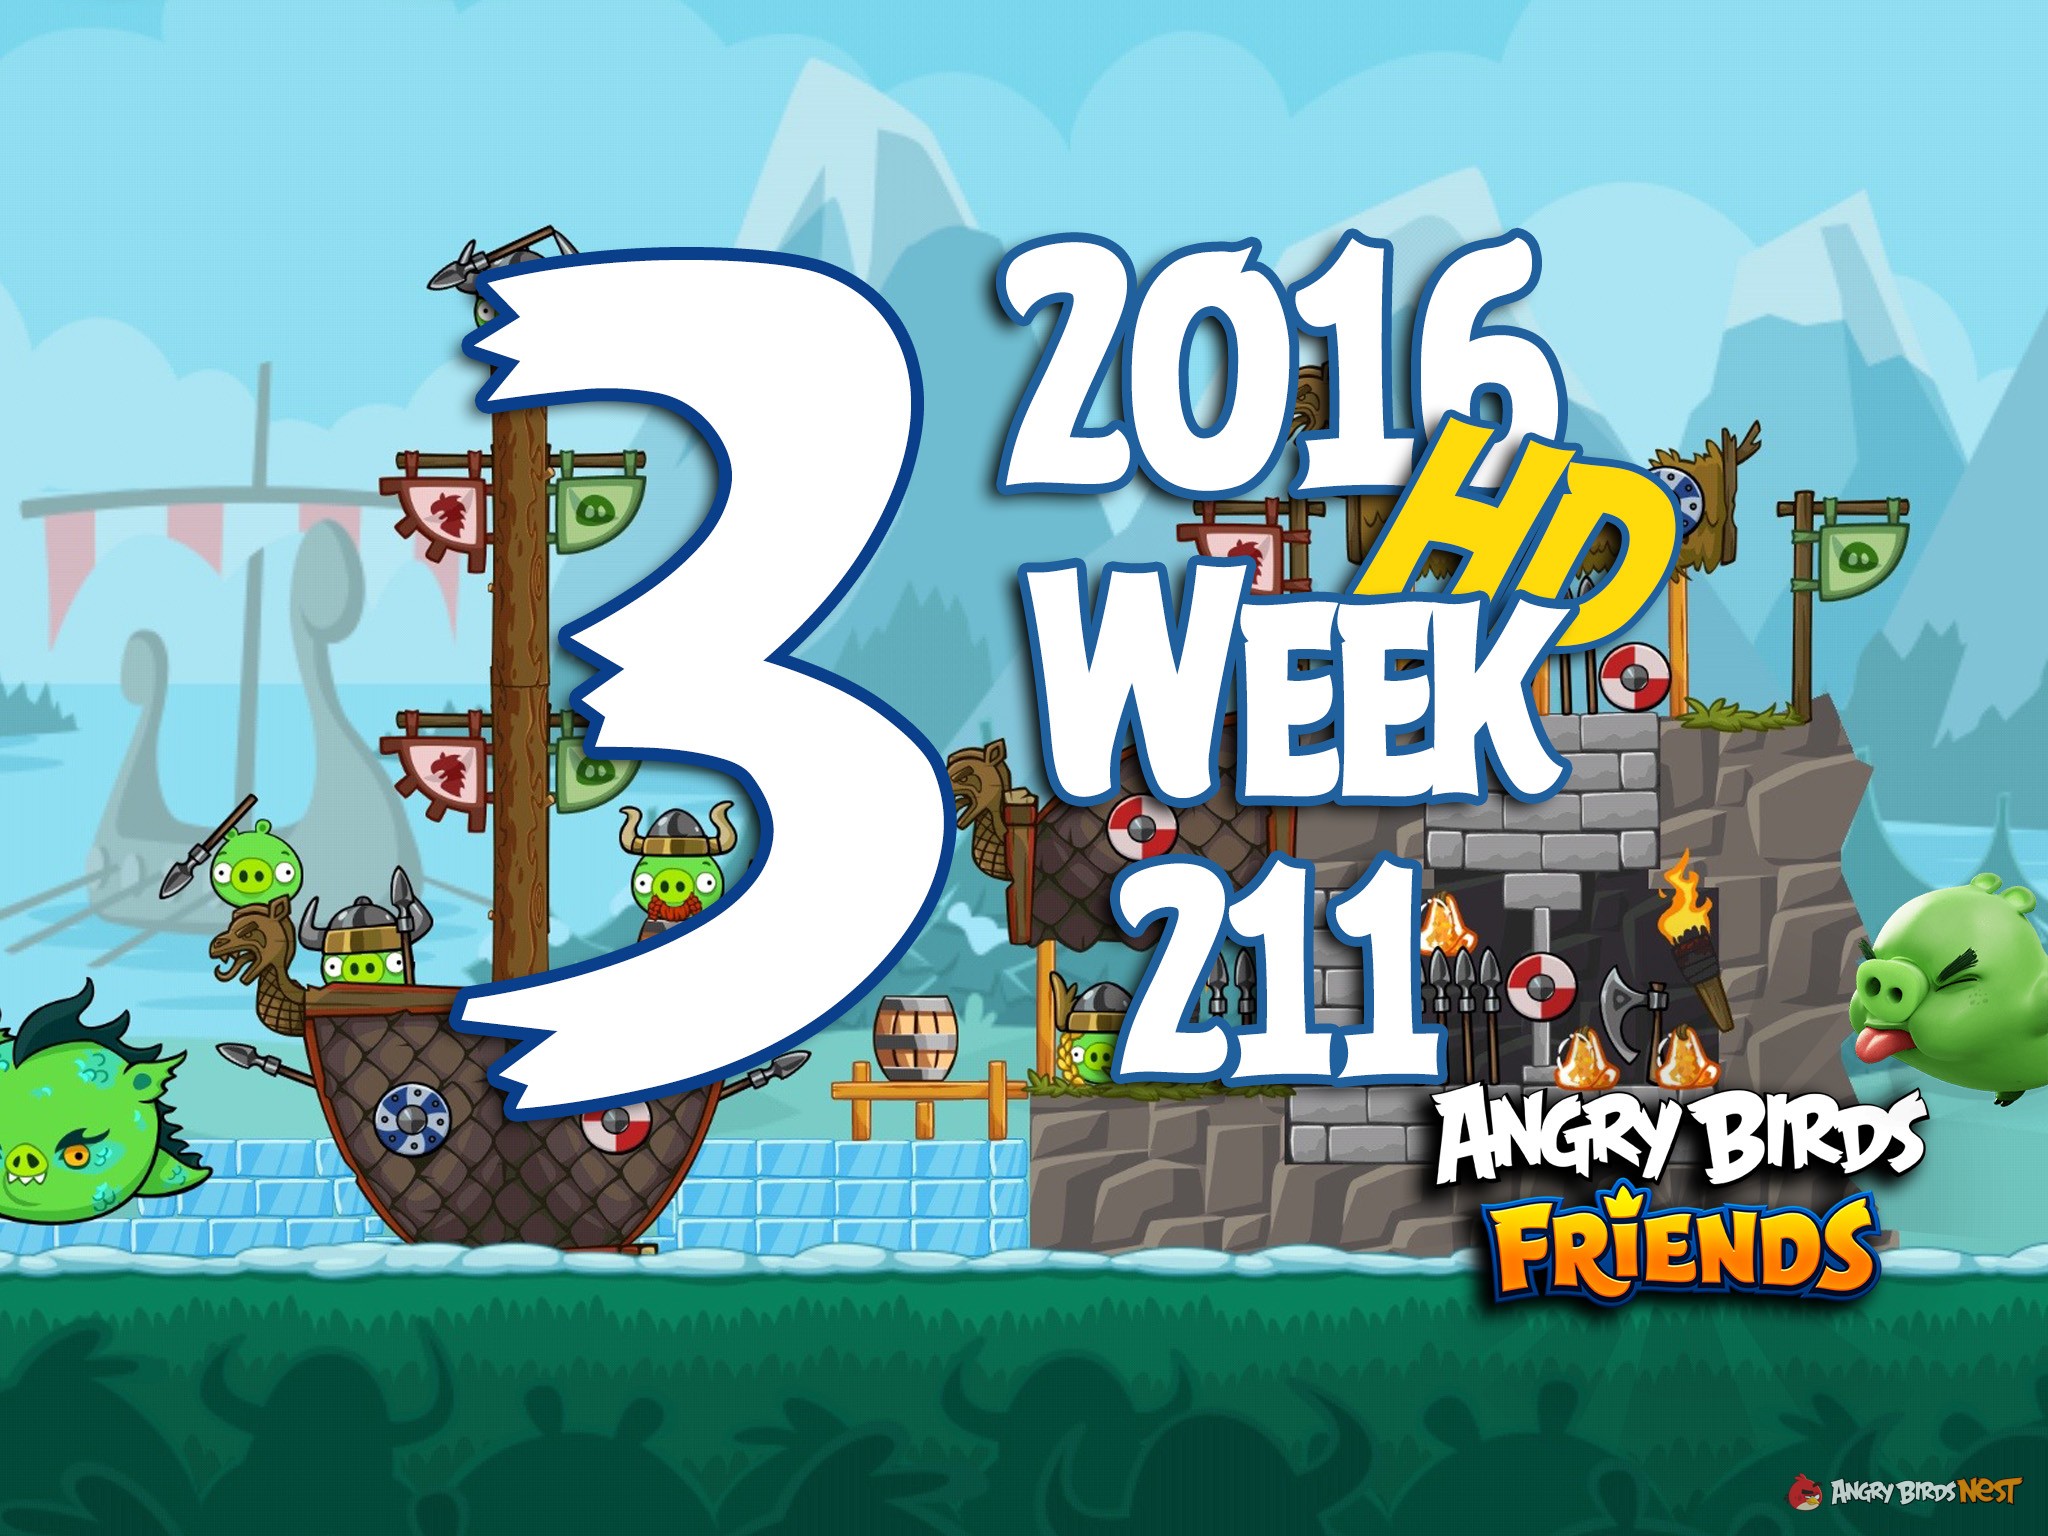 Angry Birds Friends Tournament Level 3 Week 211 Walkthrough | 2016